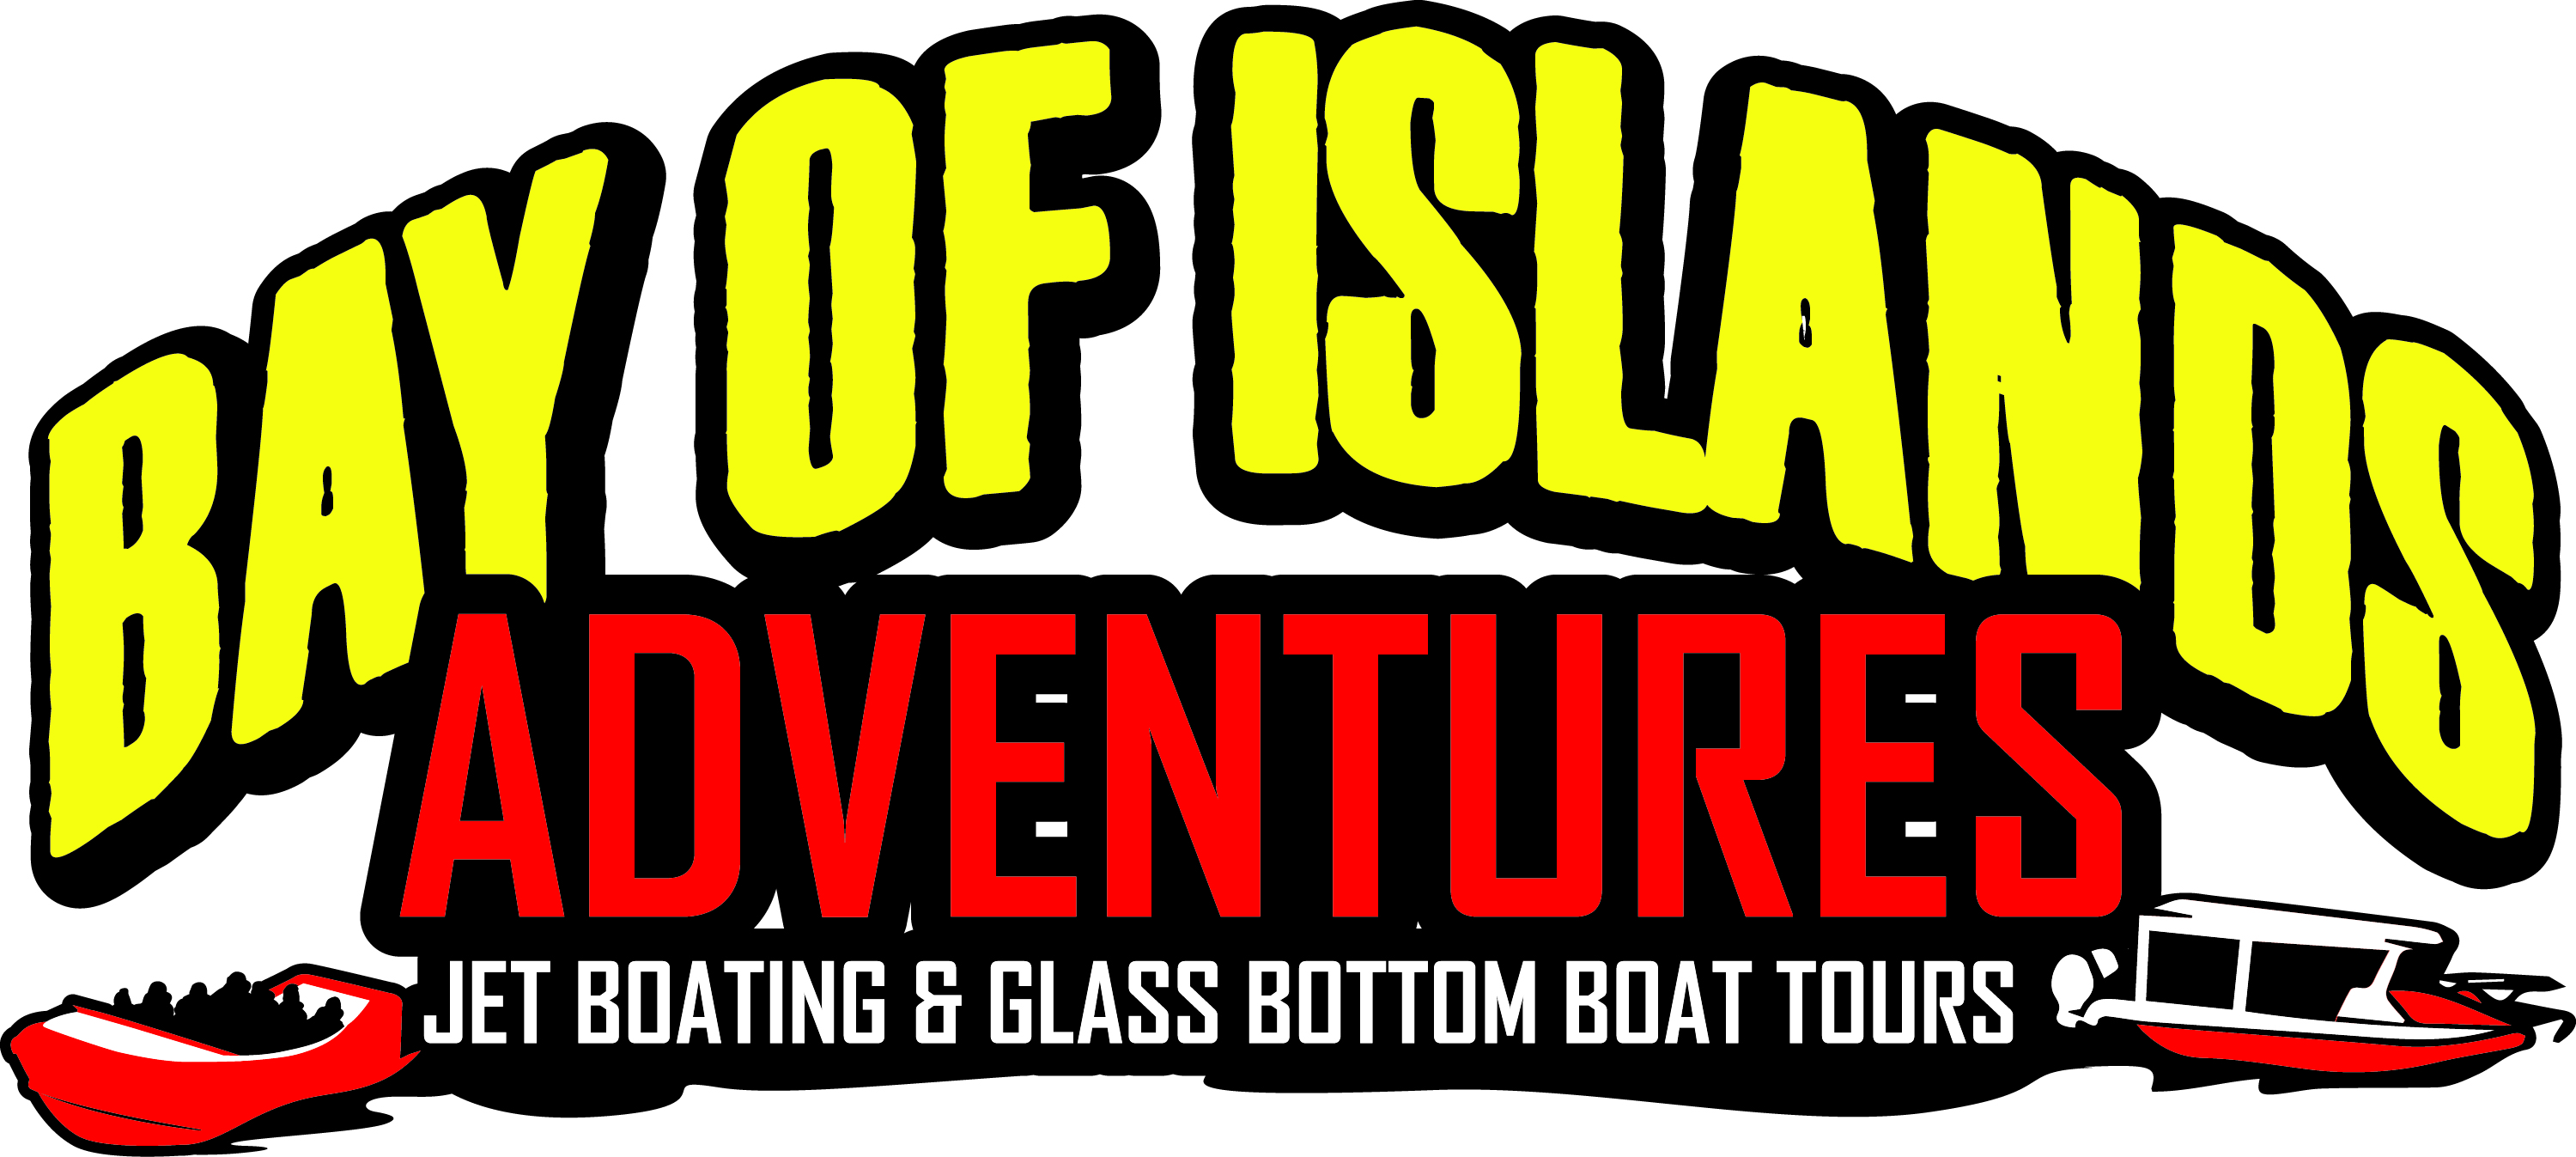 Bay of Islands Adventures